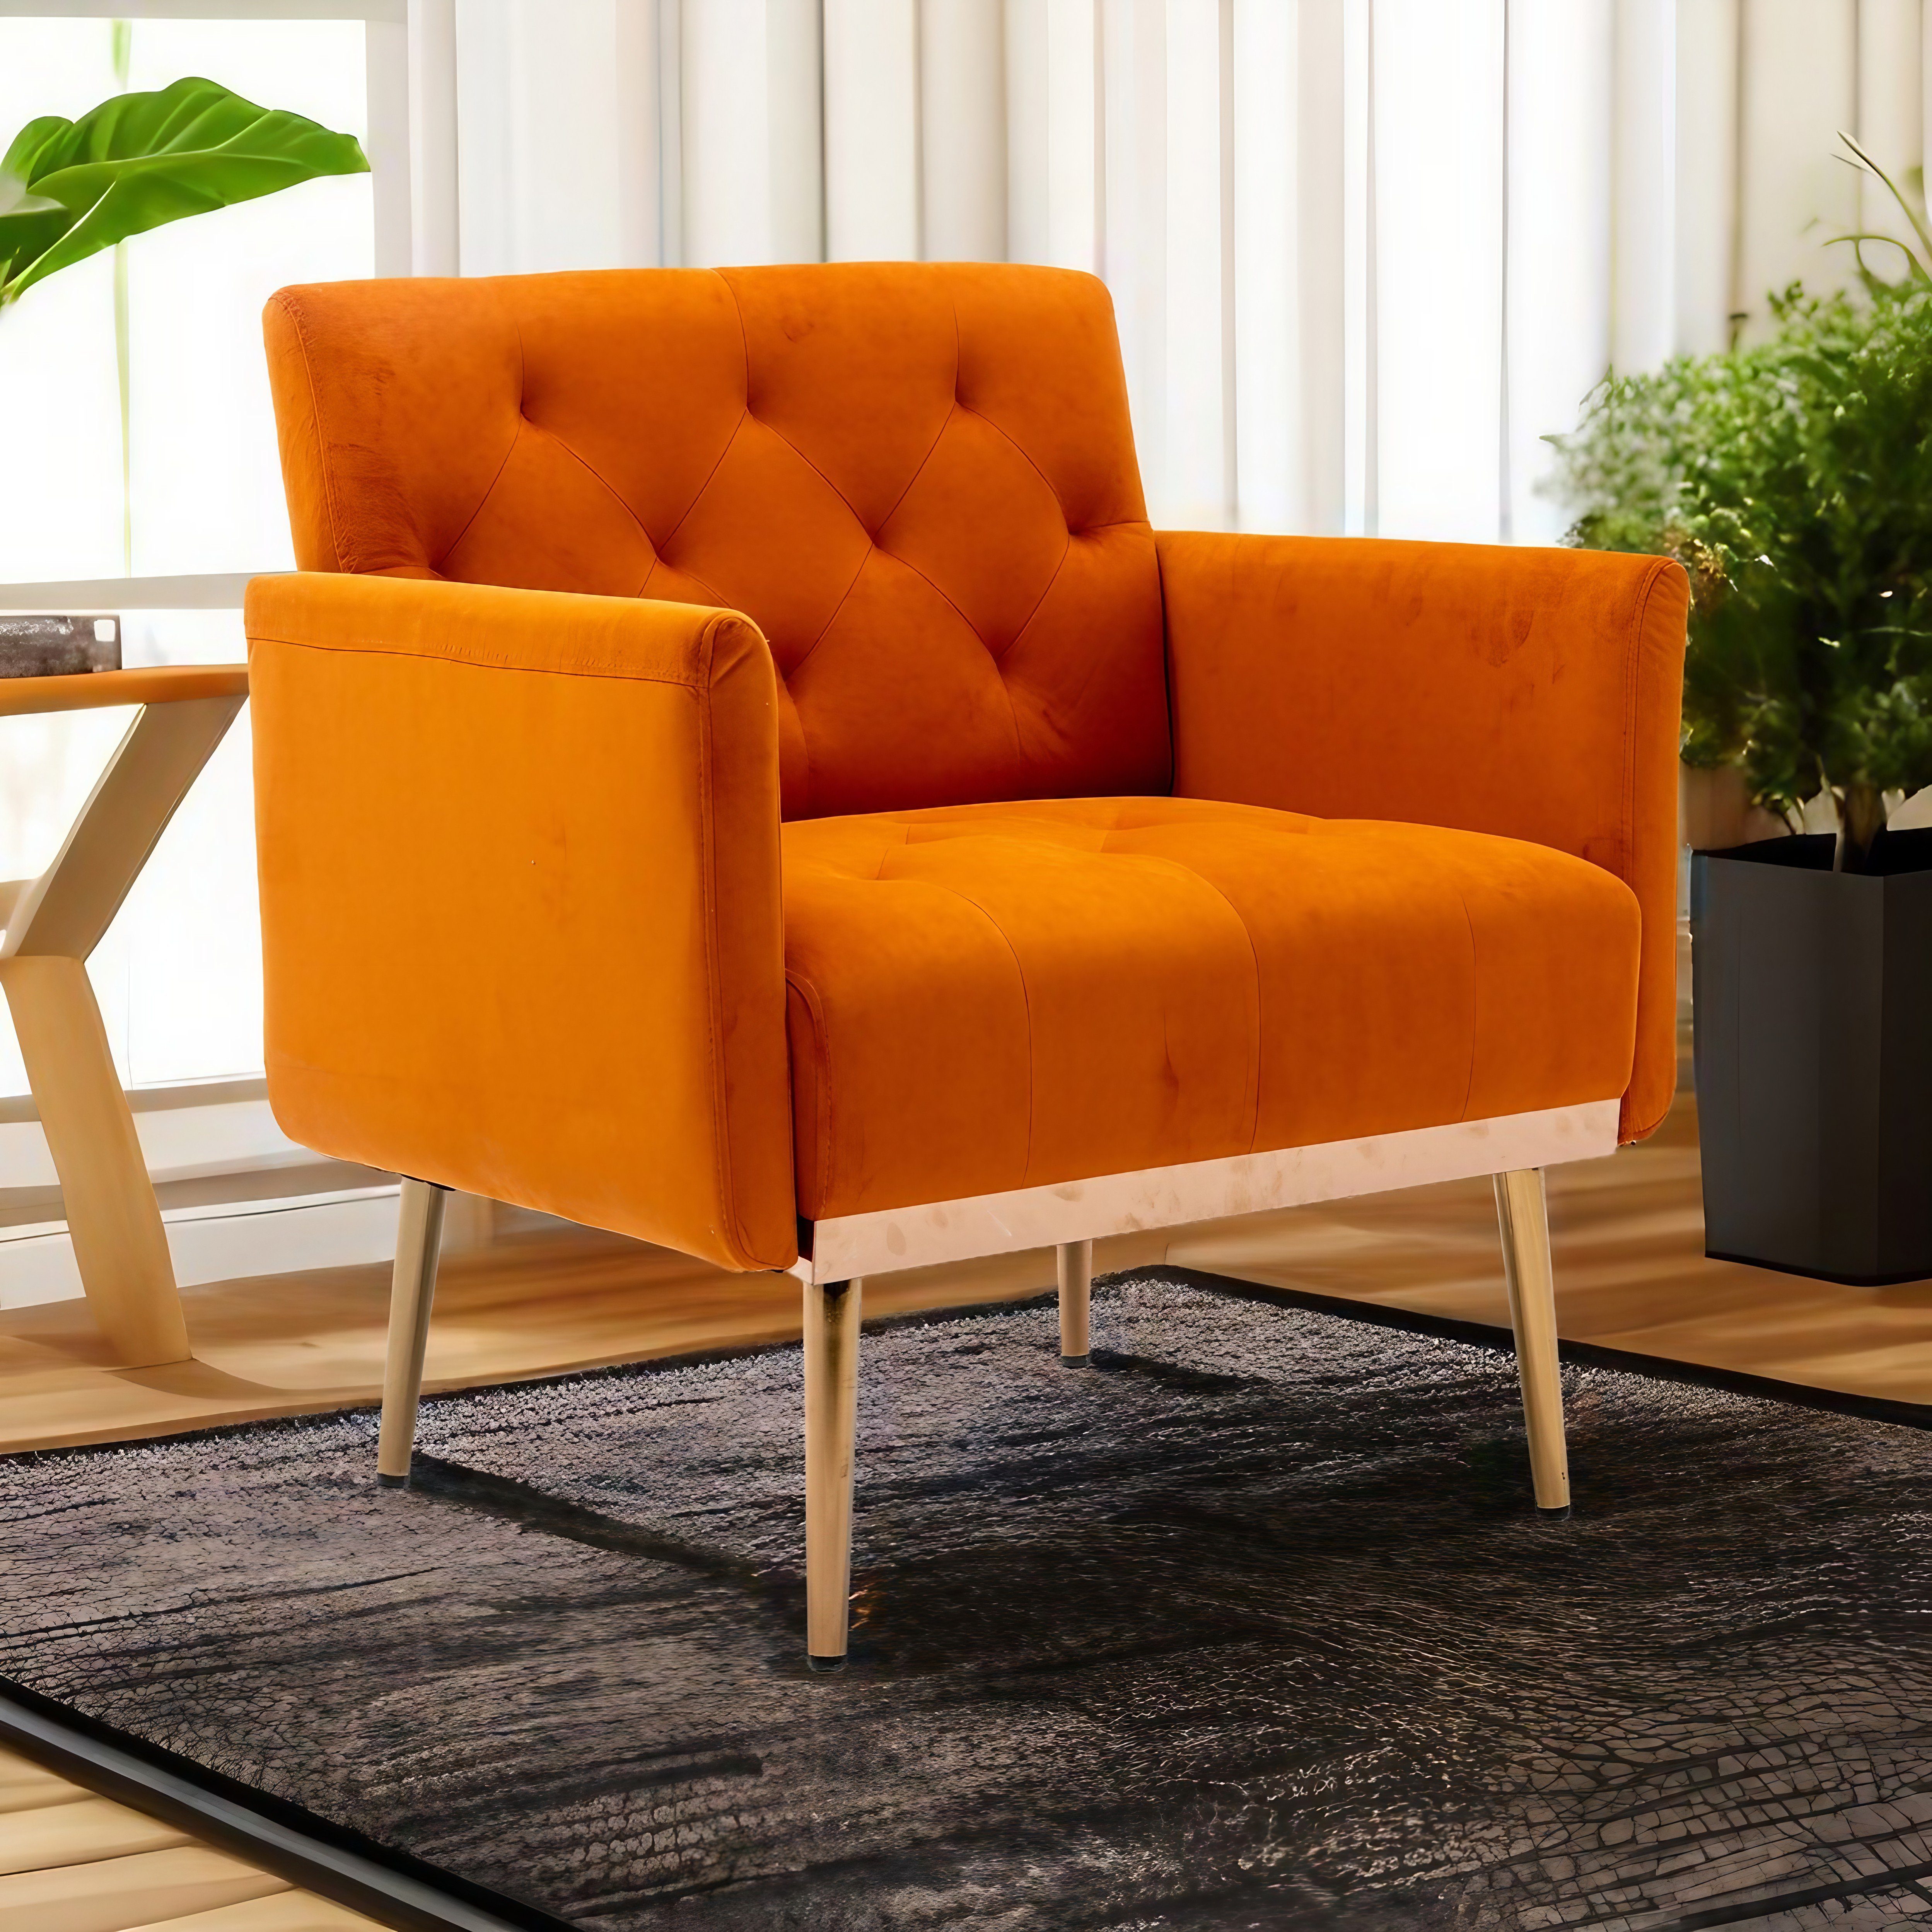 OKWISH Esszimmerstuhl Vierbeiniger Stuhl, Akzentstuhl, Freizeitsessel mit roségoldenen Füßen orange